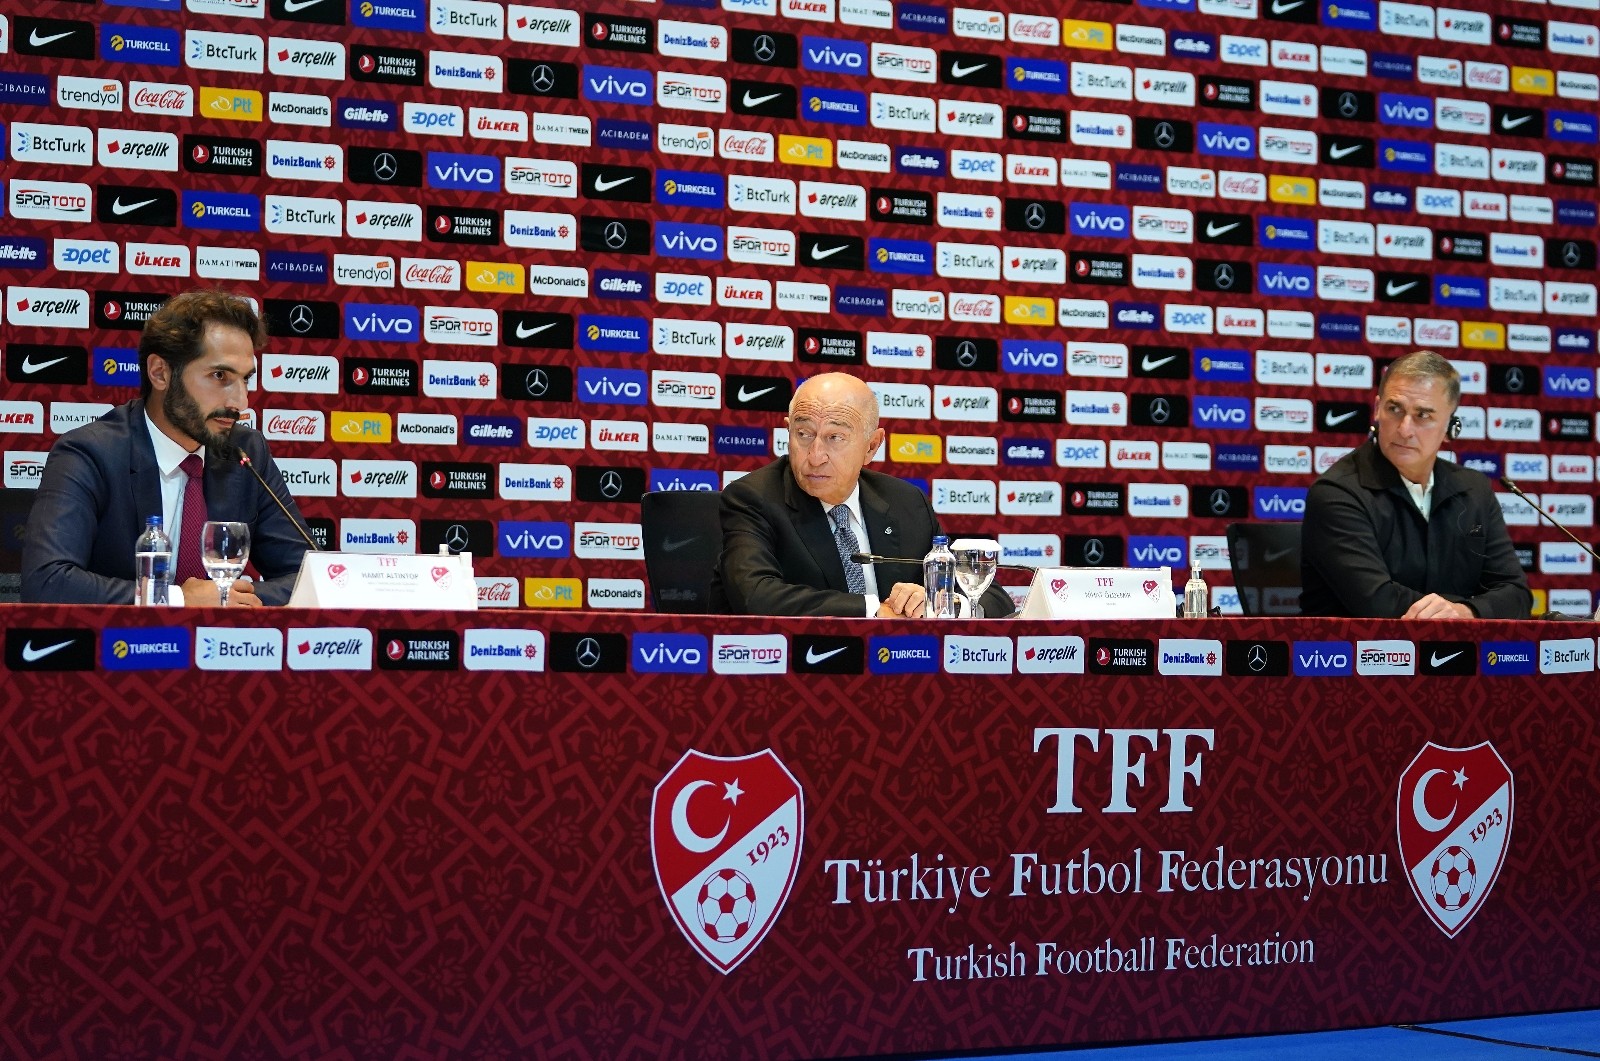 TFF Başkanı Nihat Özdemir: “Yeni dönemde Kuntz’un en büyük yardımcısı Hamit Altıntop olacaktır.”